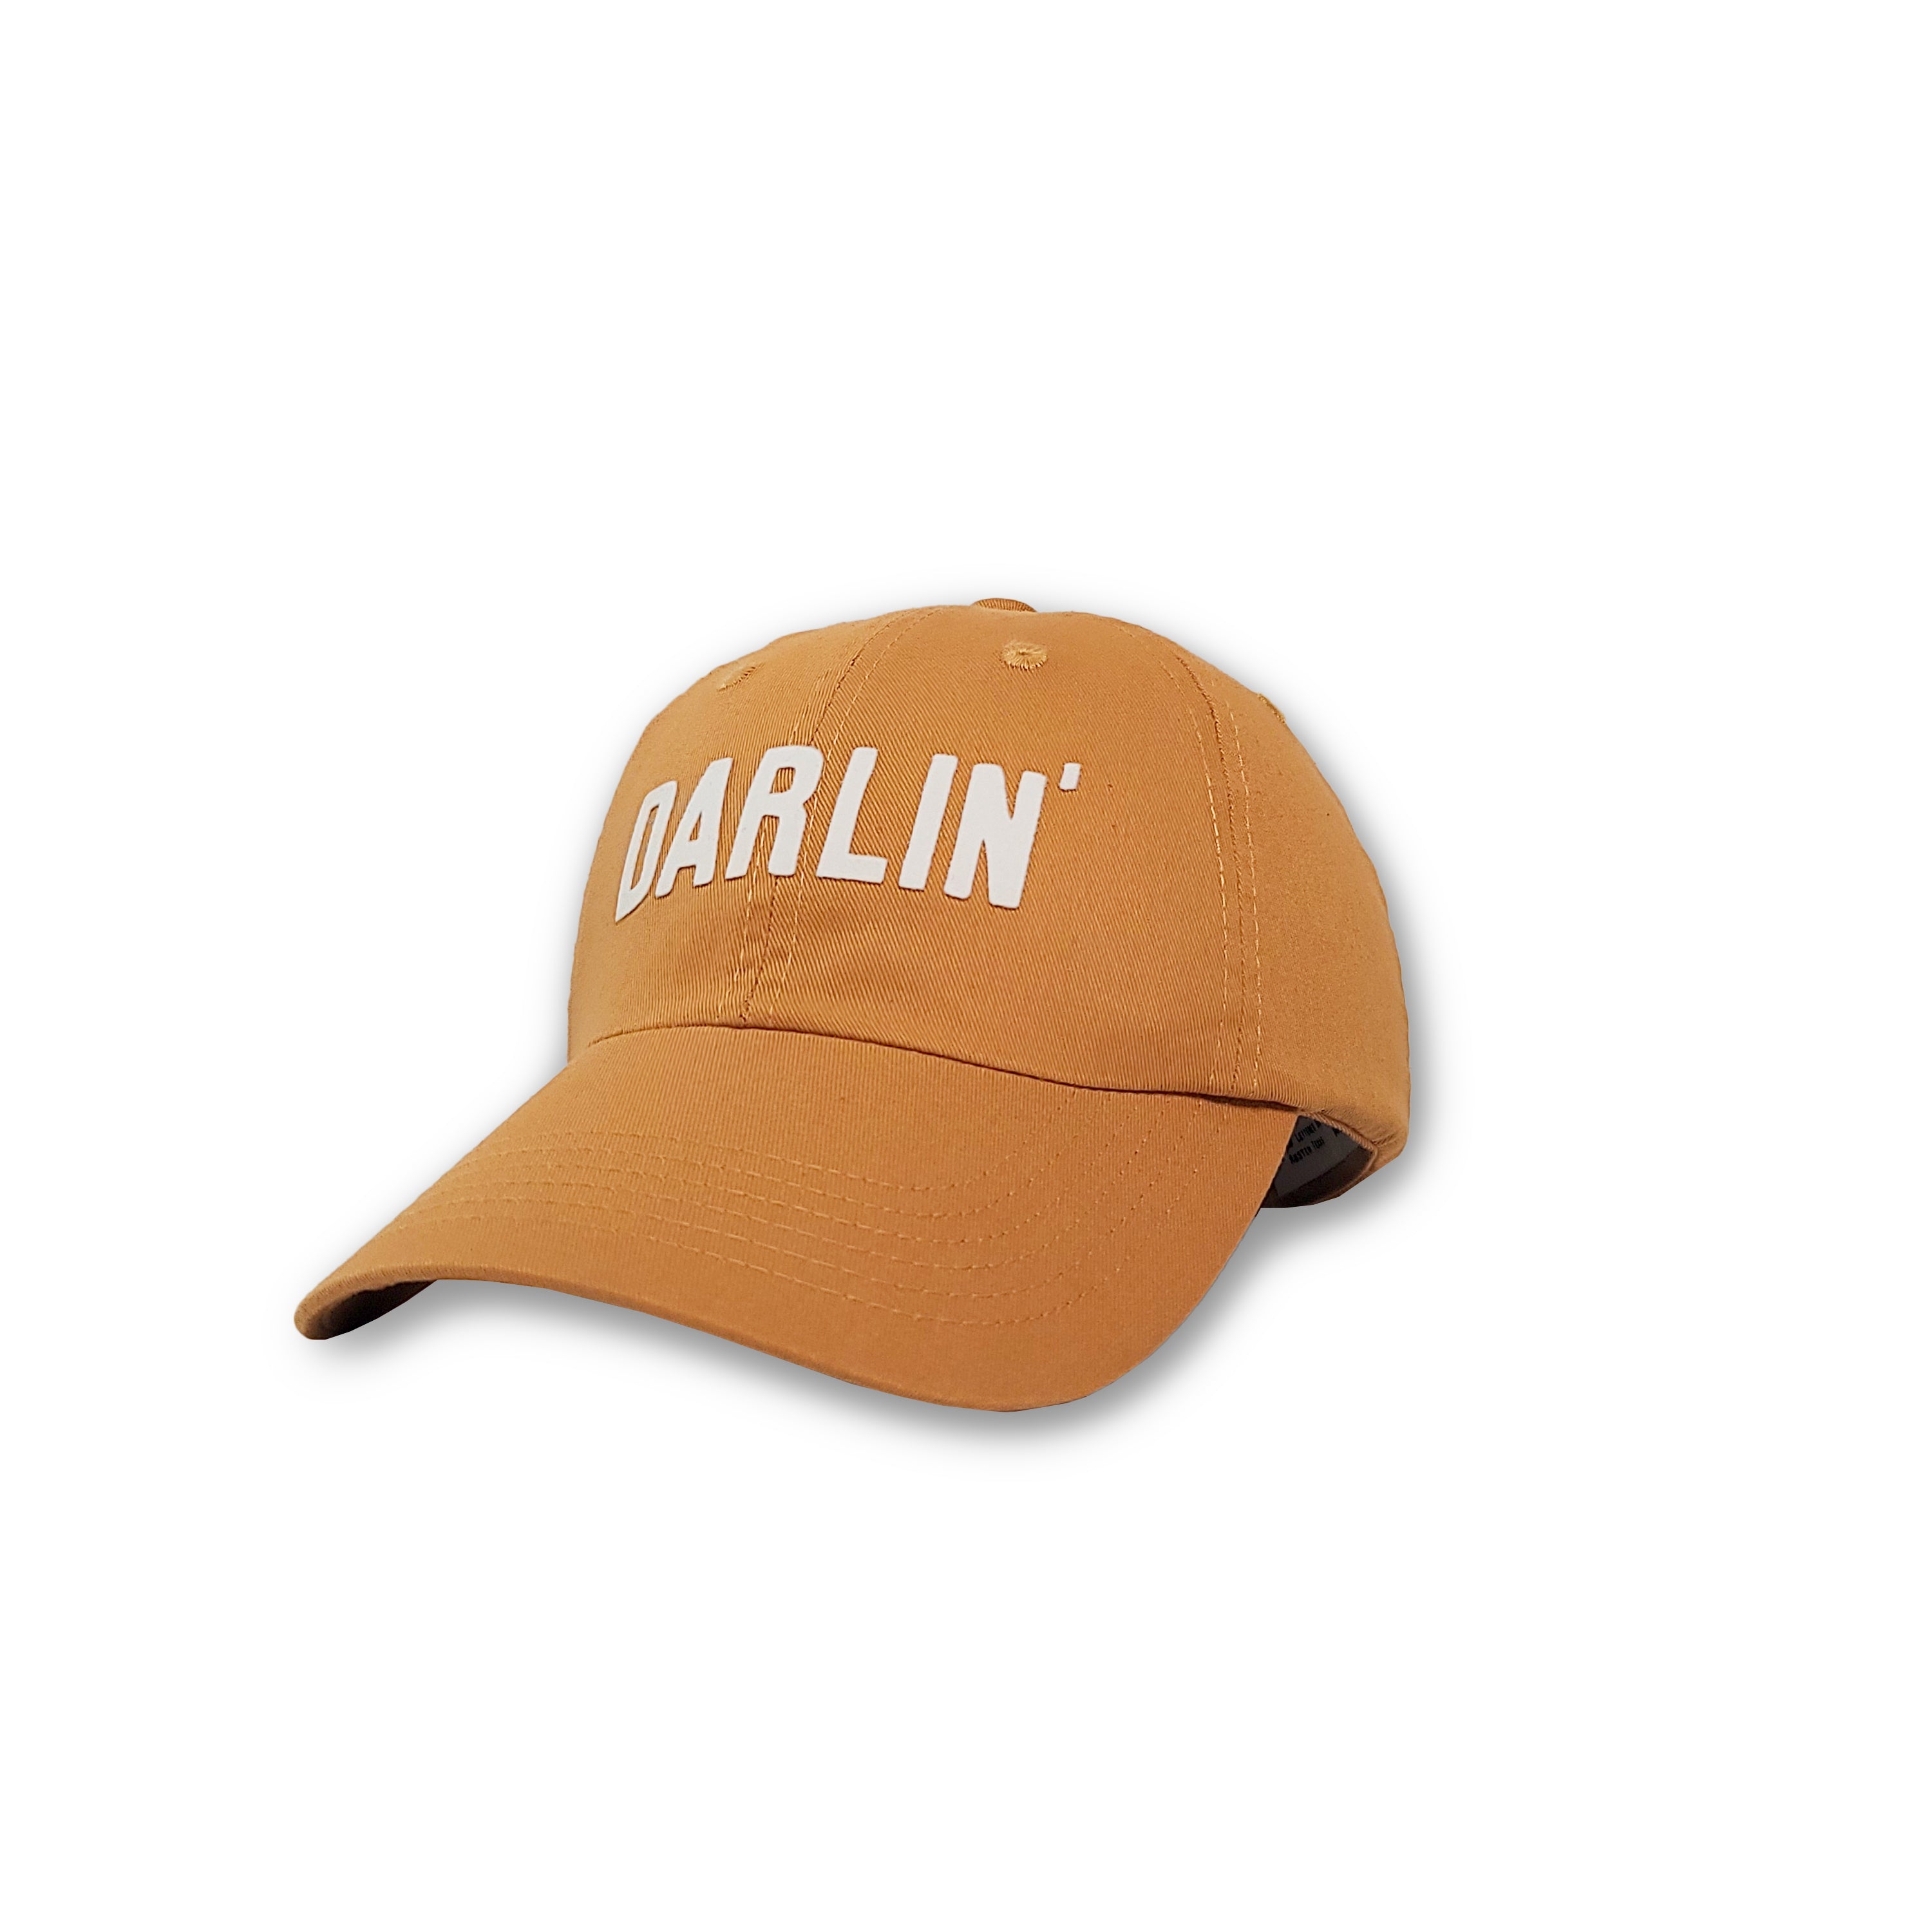 Darlin' block hat by Frankie Jean